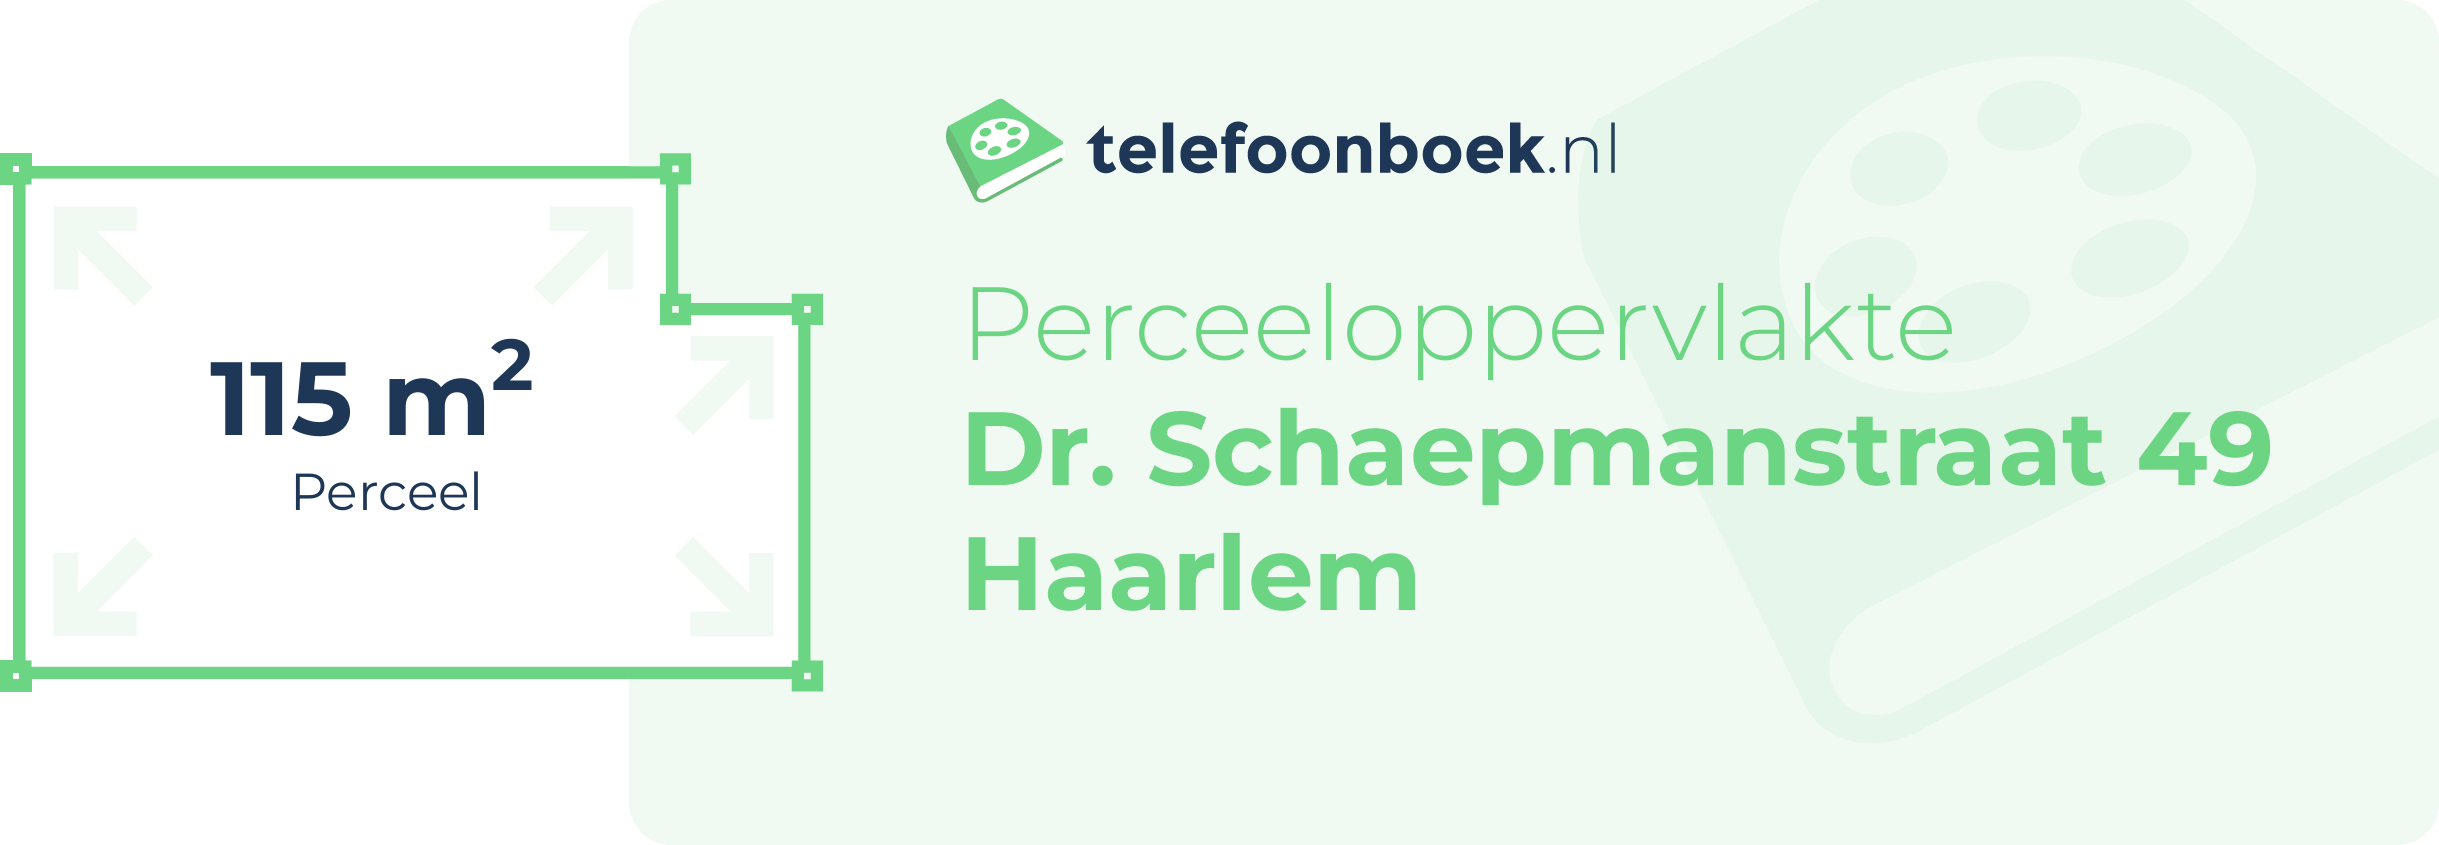 Perceeloppervlakte Dr. Schaepmanstraat 49 Haarlem